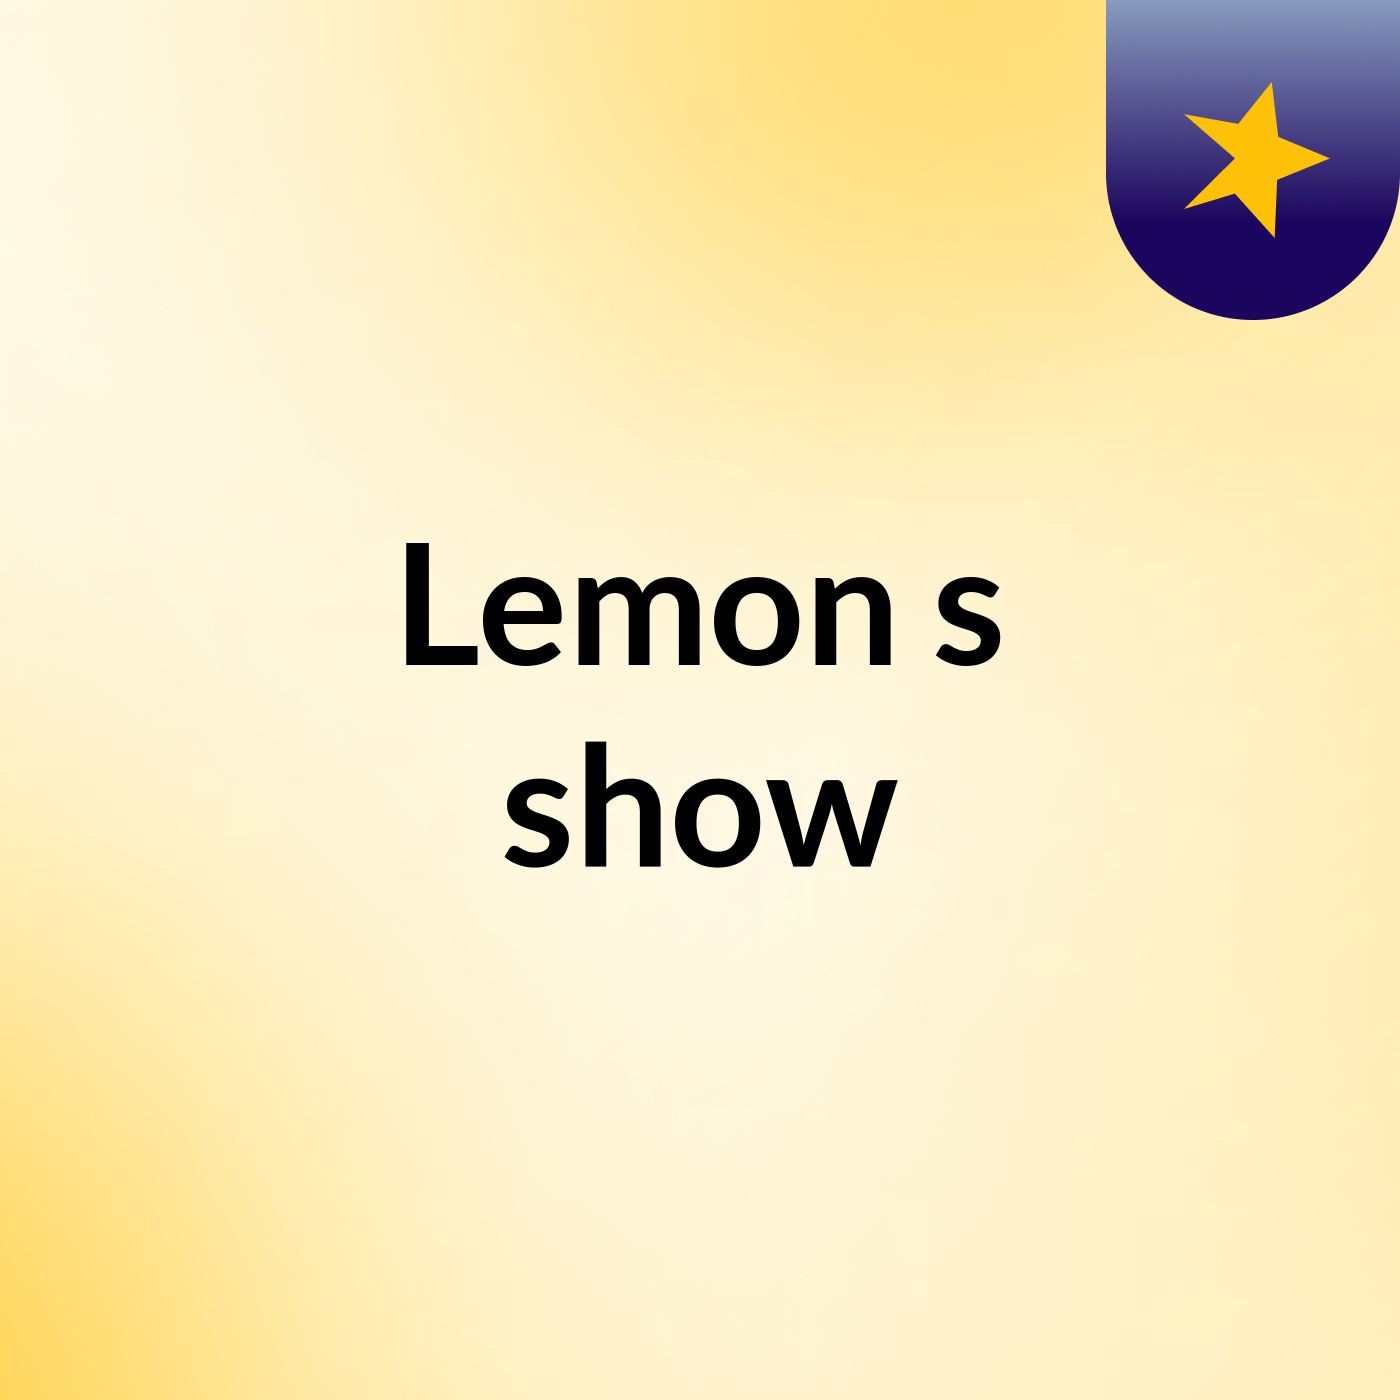 Lemon's show